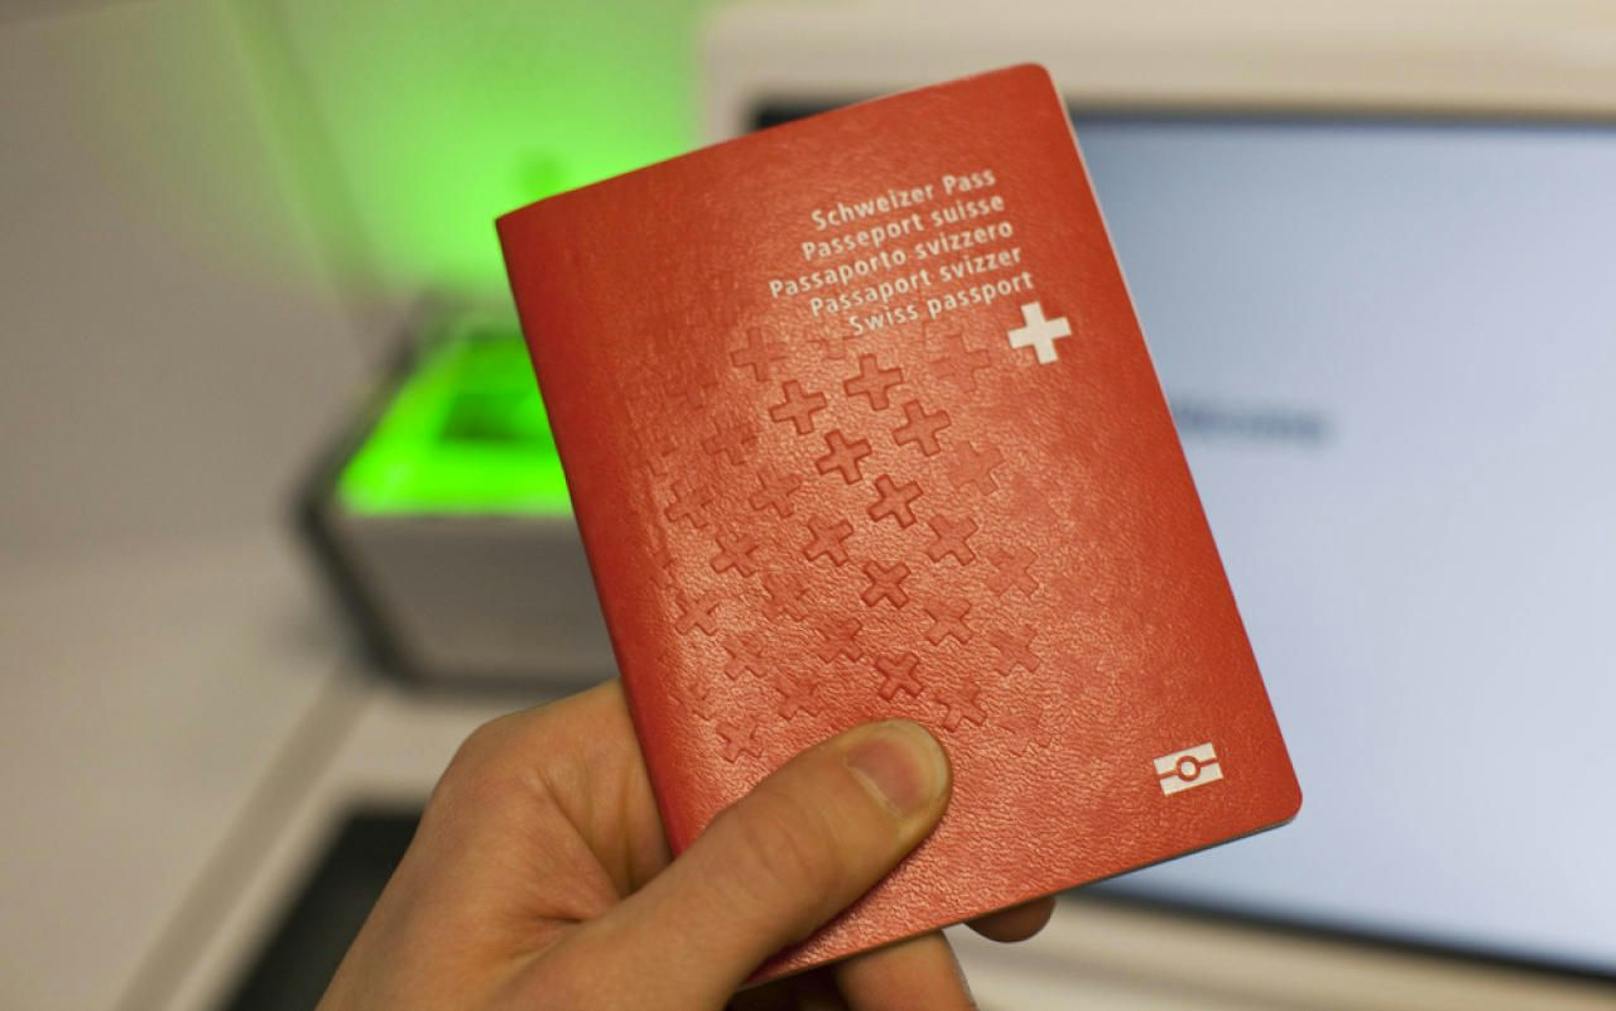 Mann namens "Jihad" will Schweizer Pass haben